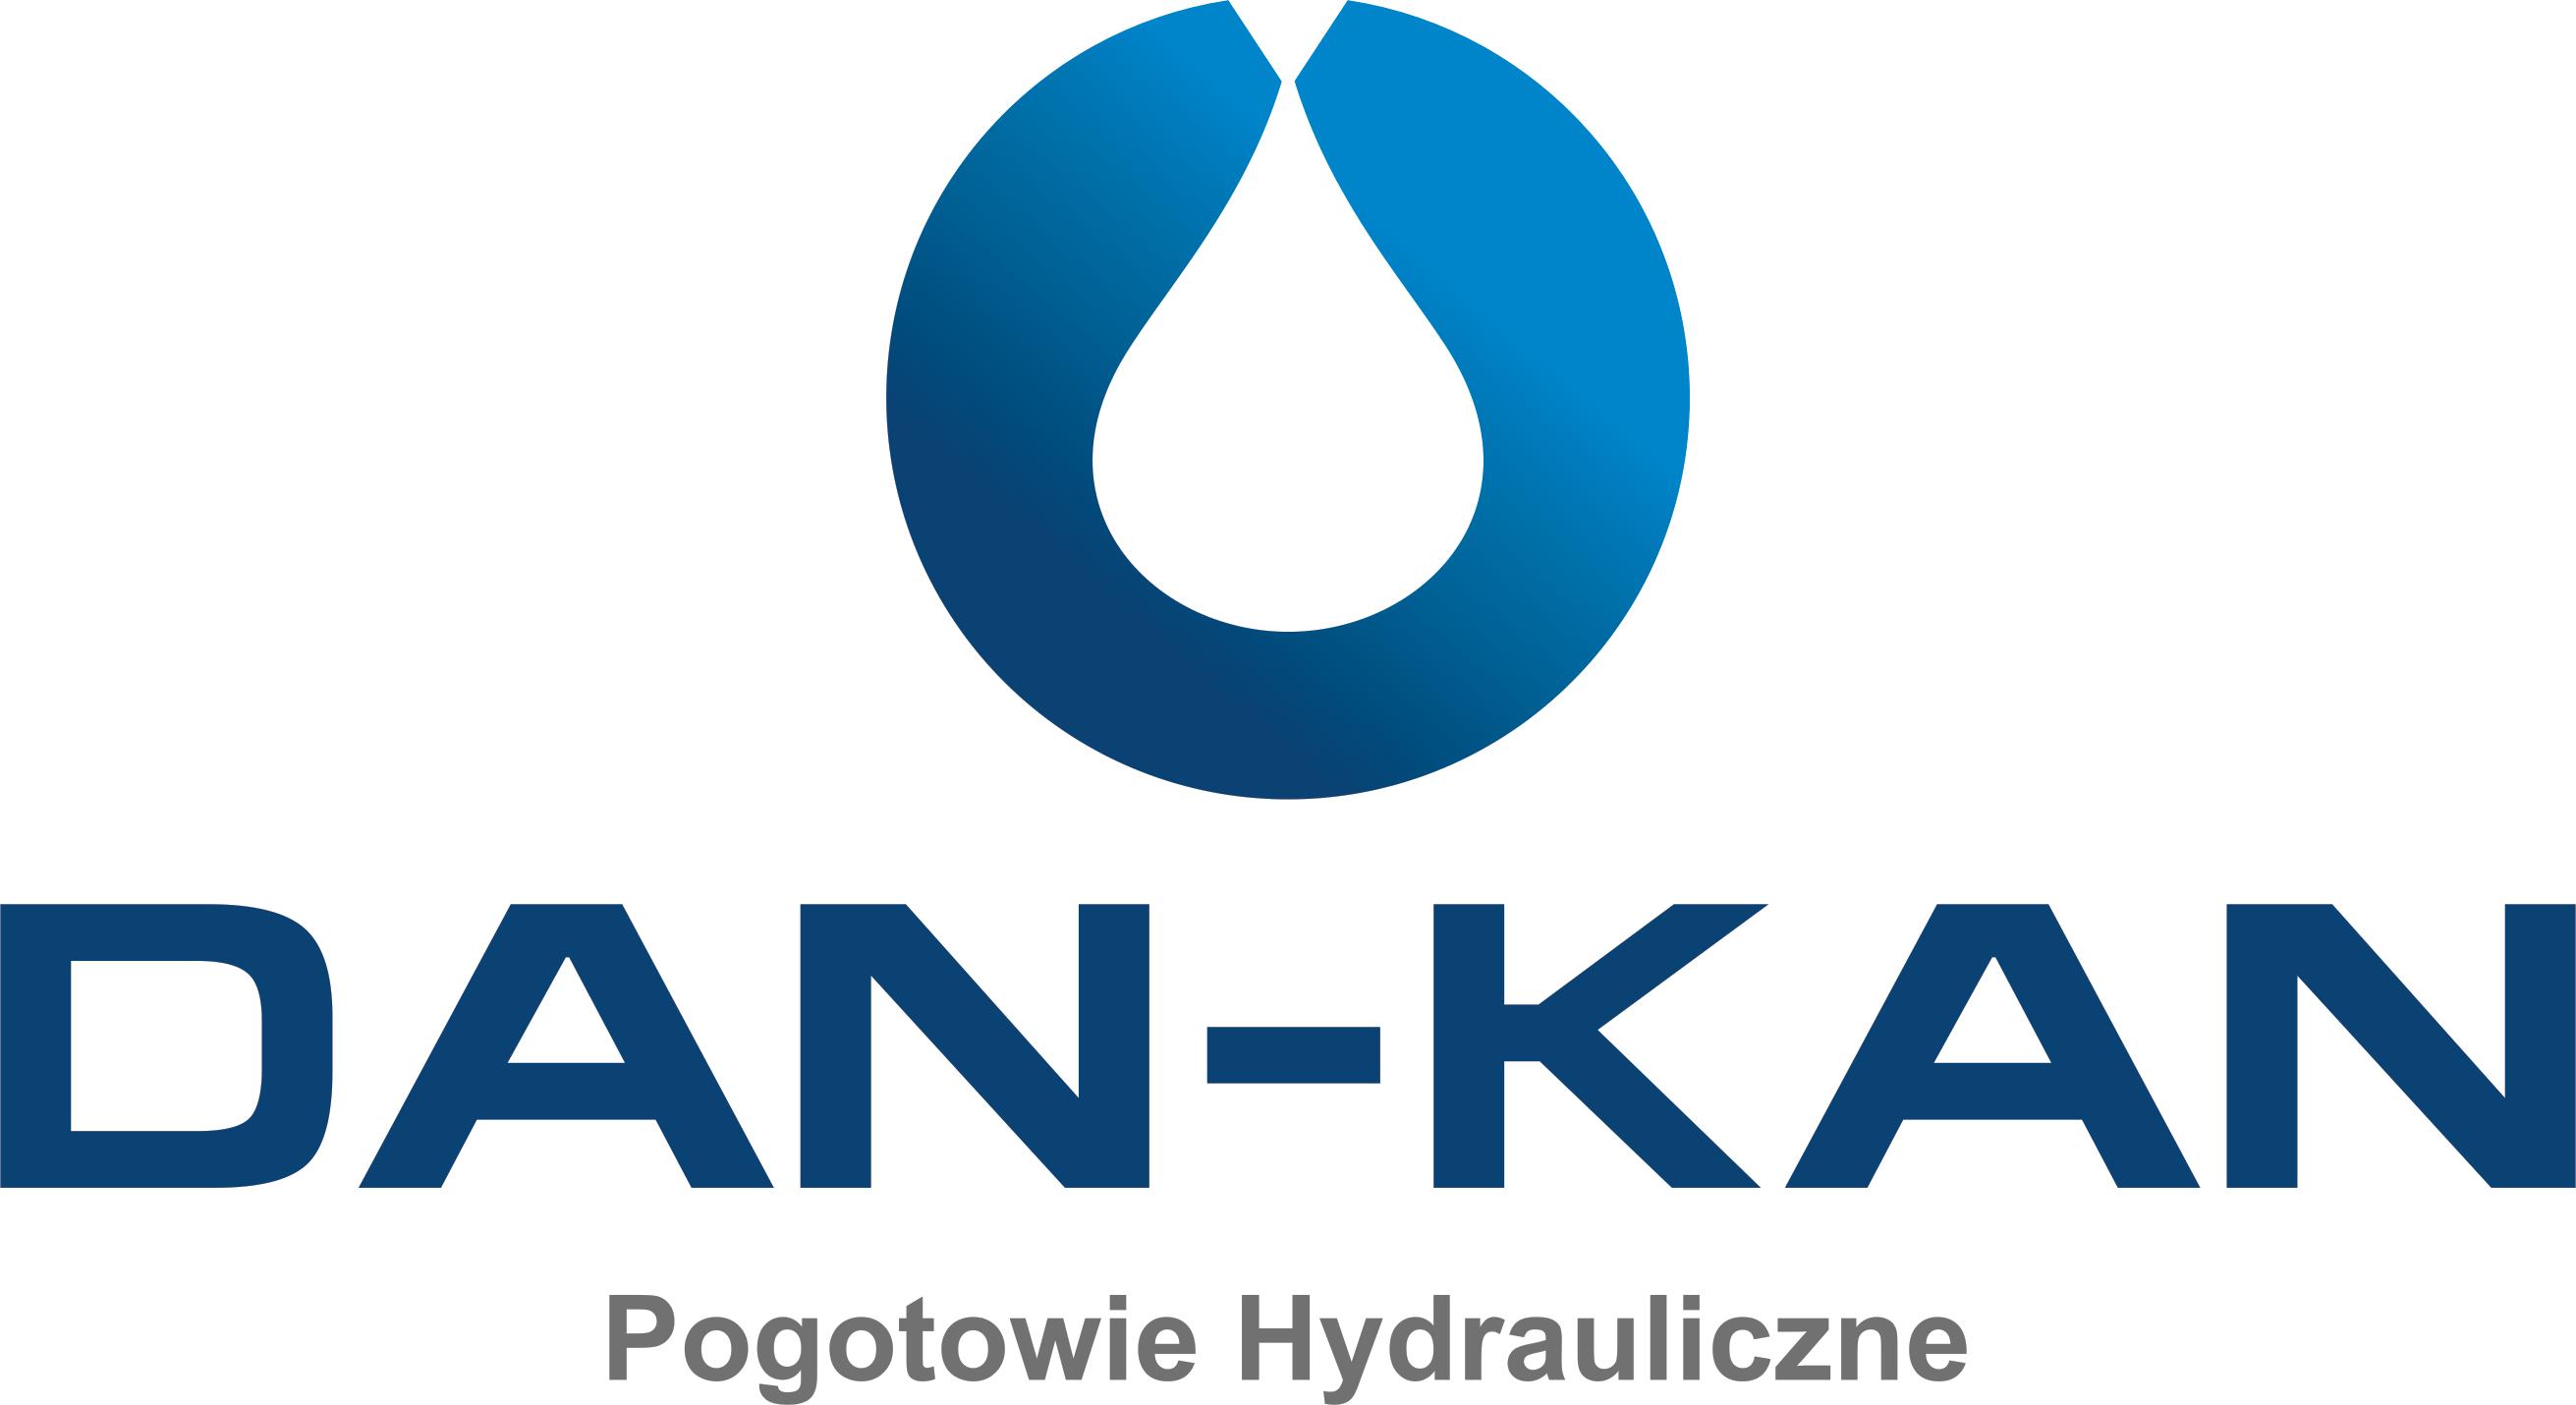 Daniel Grzechnik DAN-KAN-logo